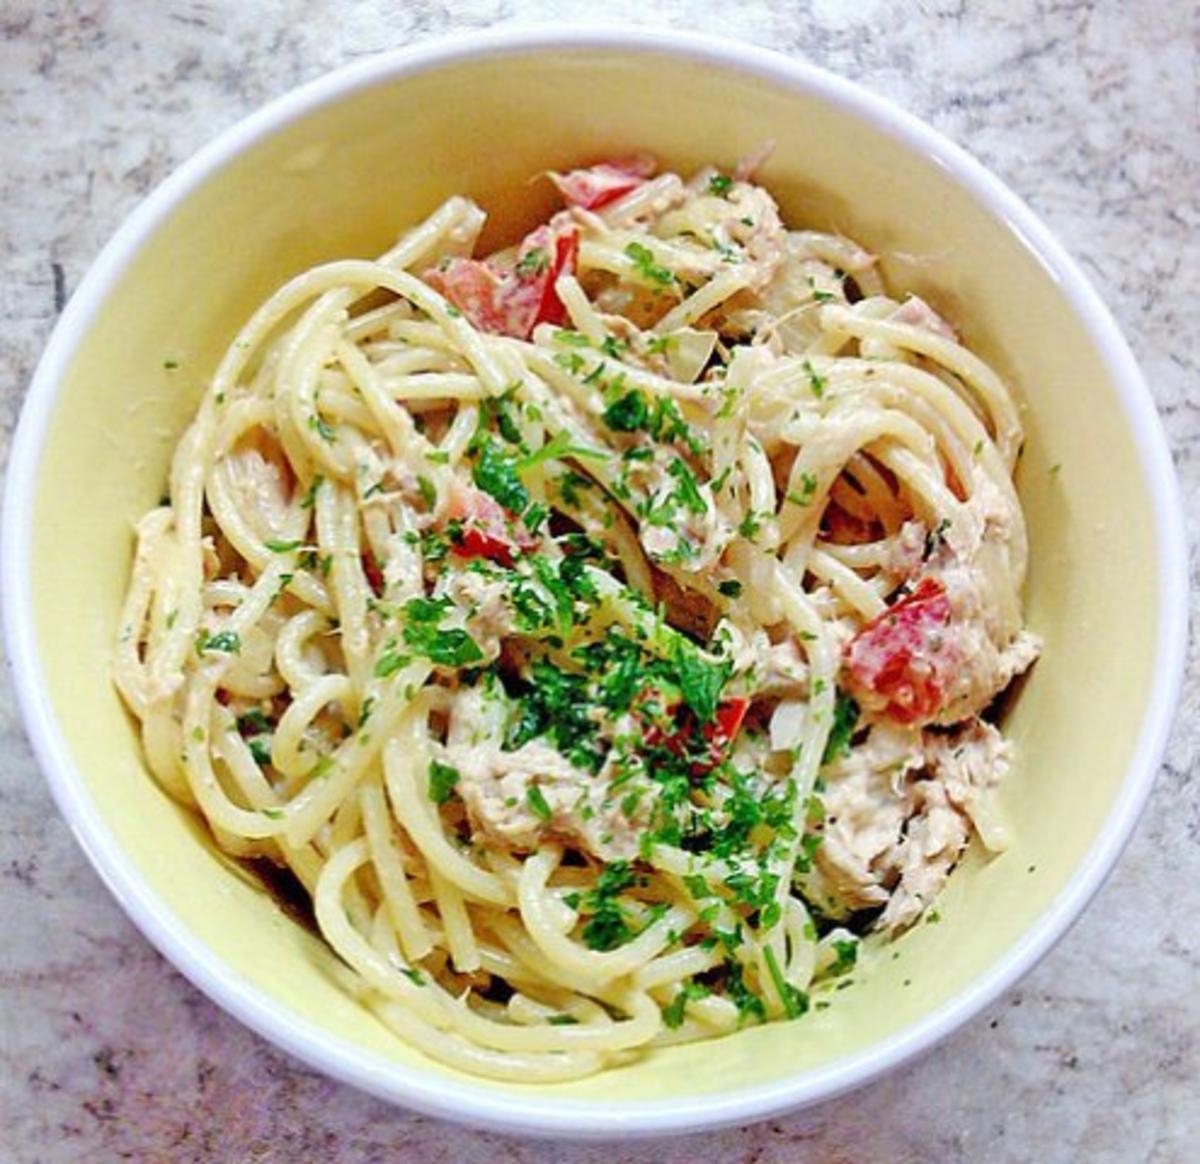 Spaghetti - Thunfisch - Salat - Rezept